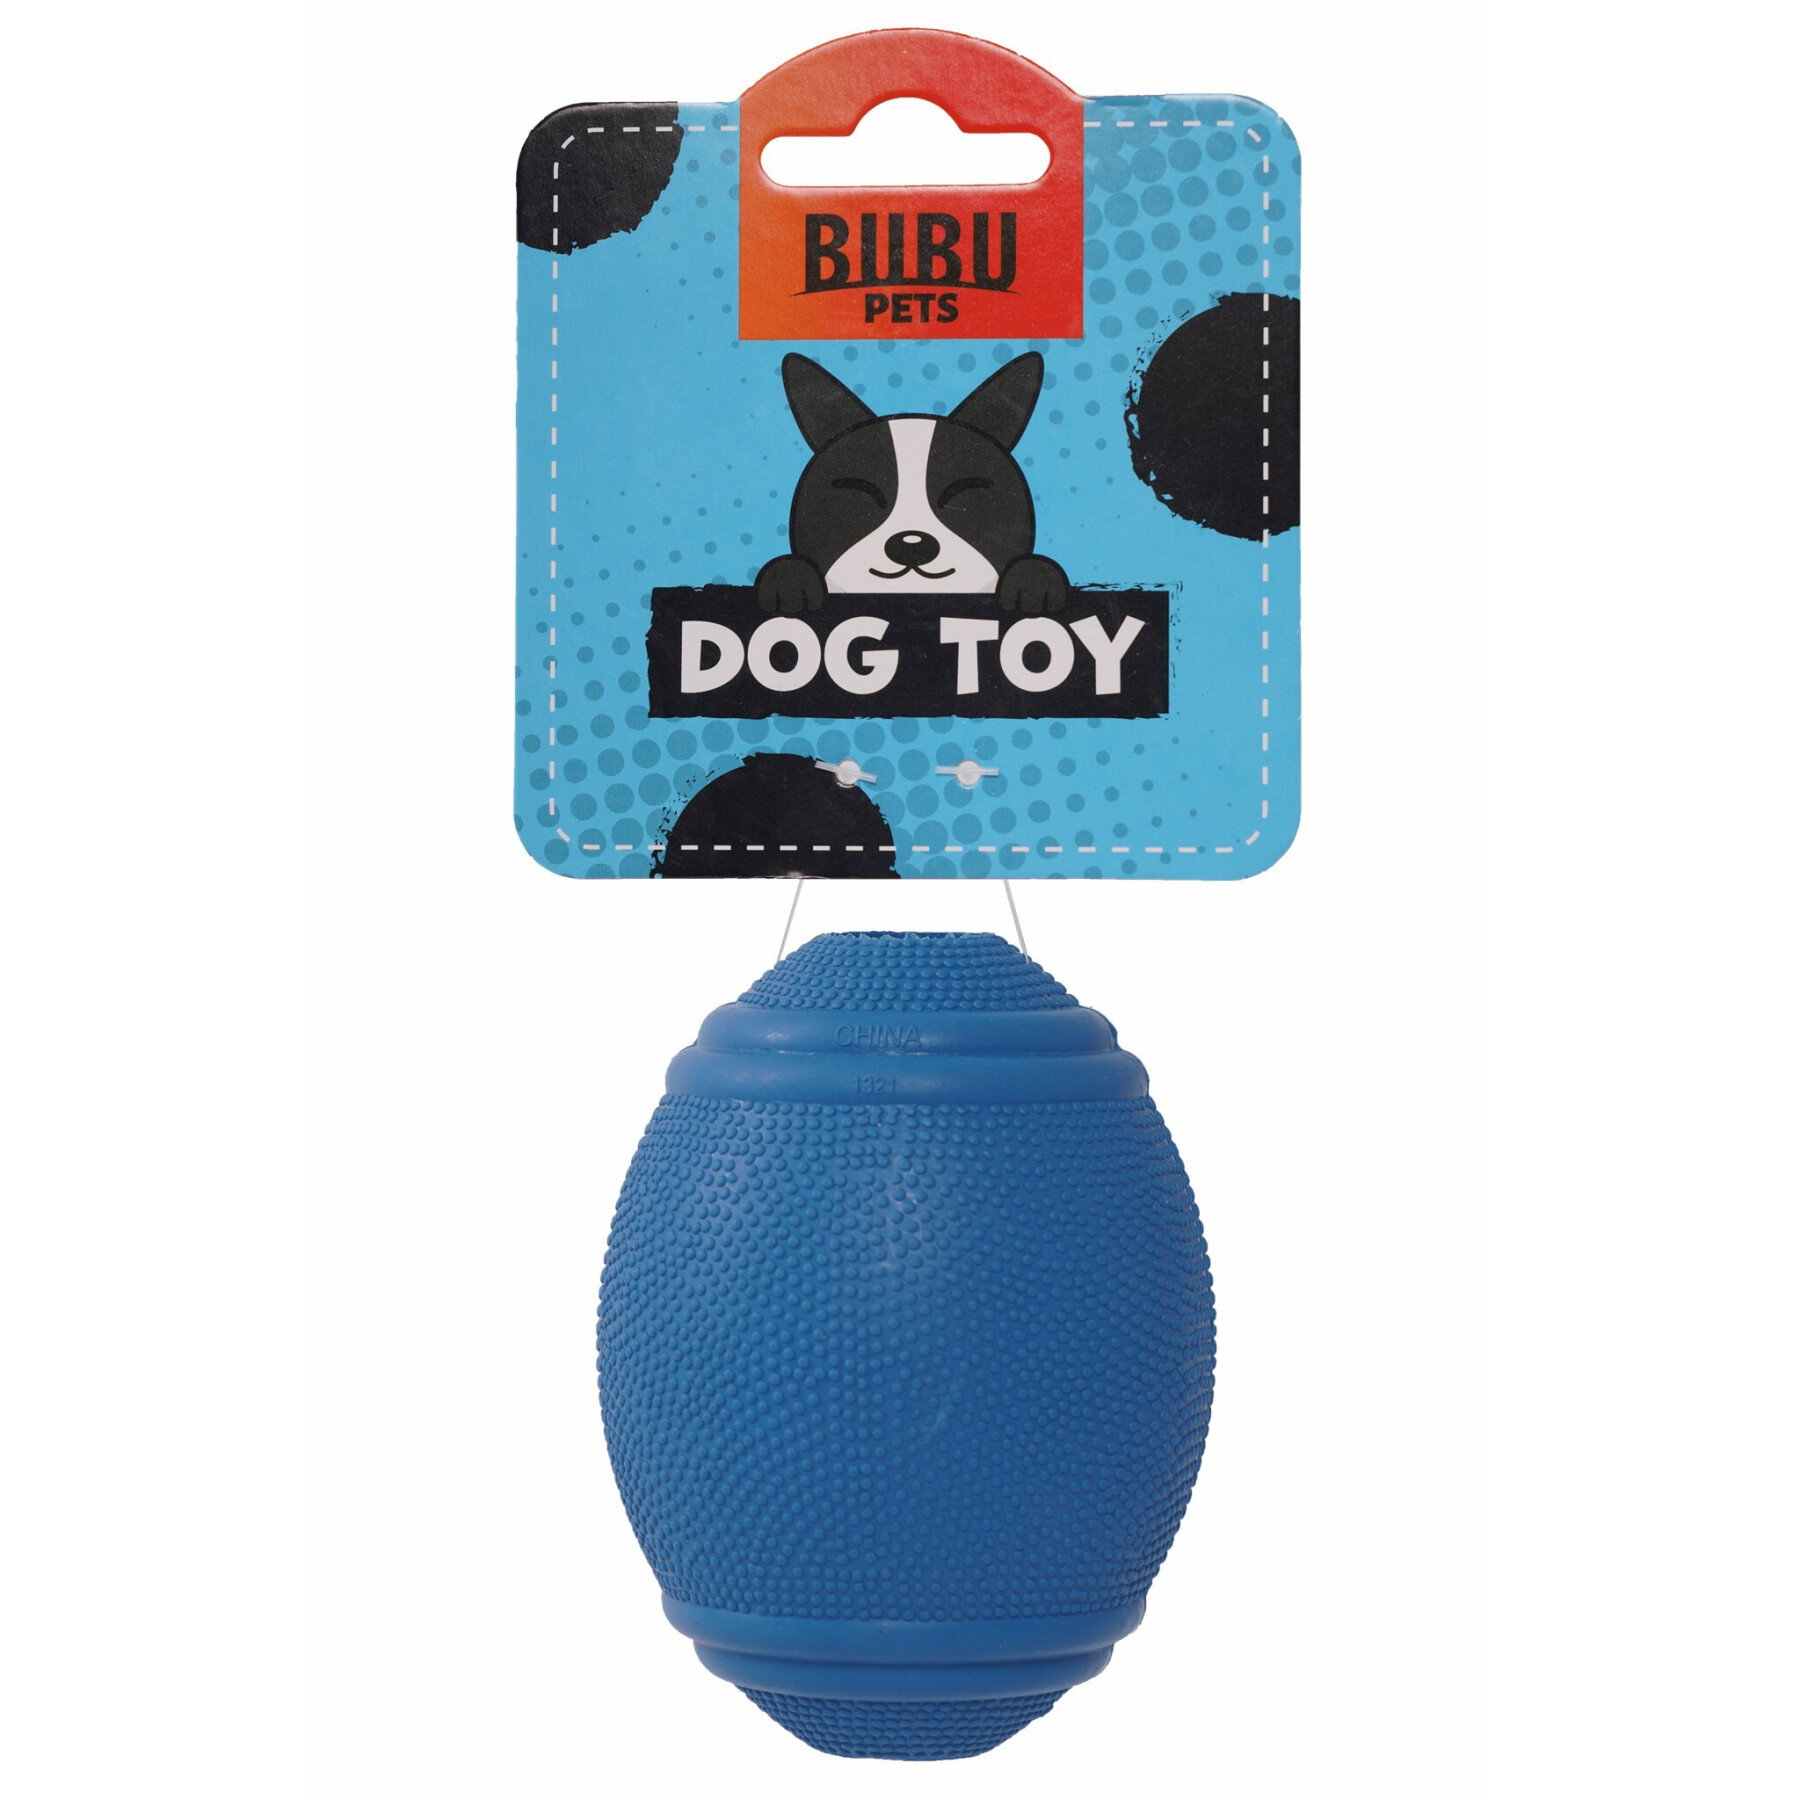 Juguete con pelota de rugby para que los perros la mordisqueen BUBU Pets